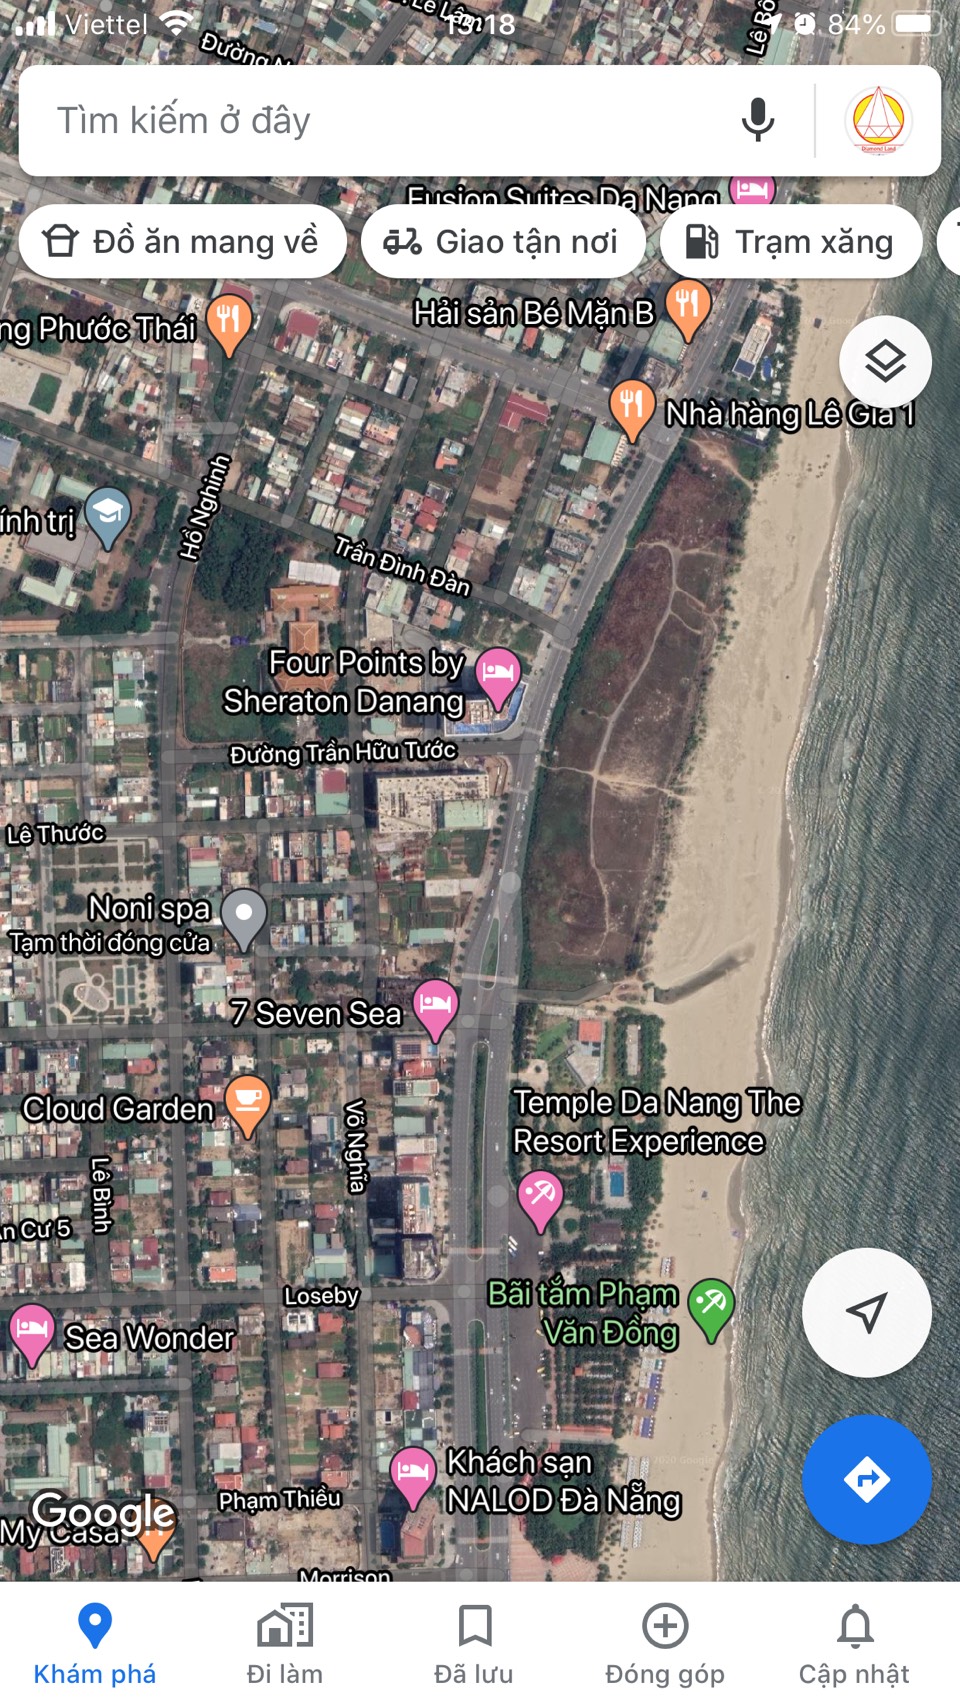 Bán 3 lô liền đất VIP đường Hồ Nghinh,Đà Nẵng 330 m2,gần biển,CH 5 sao Anphanam,giá Đẹp.0905.606.910